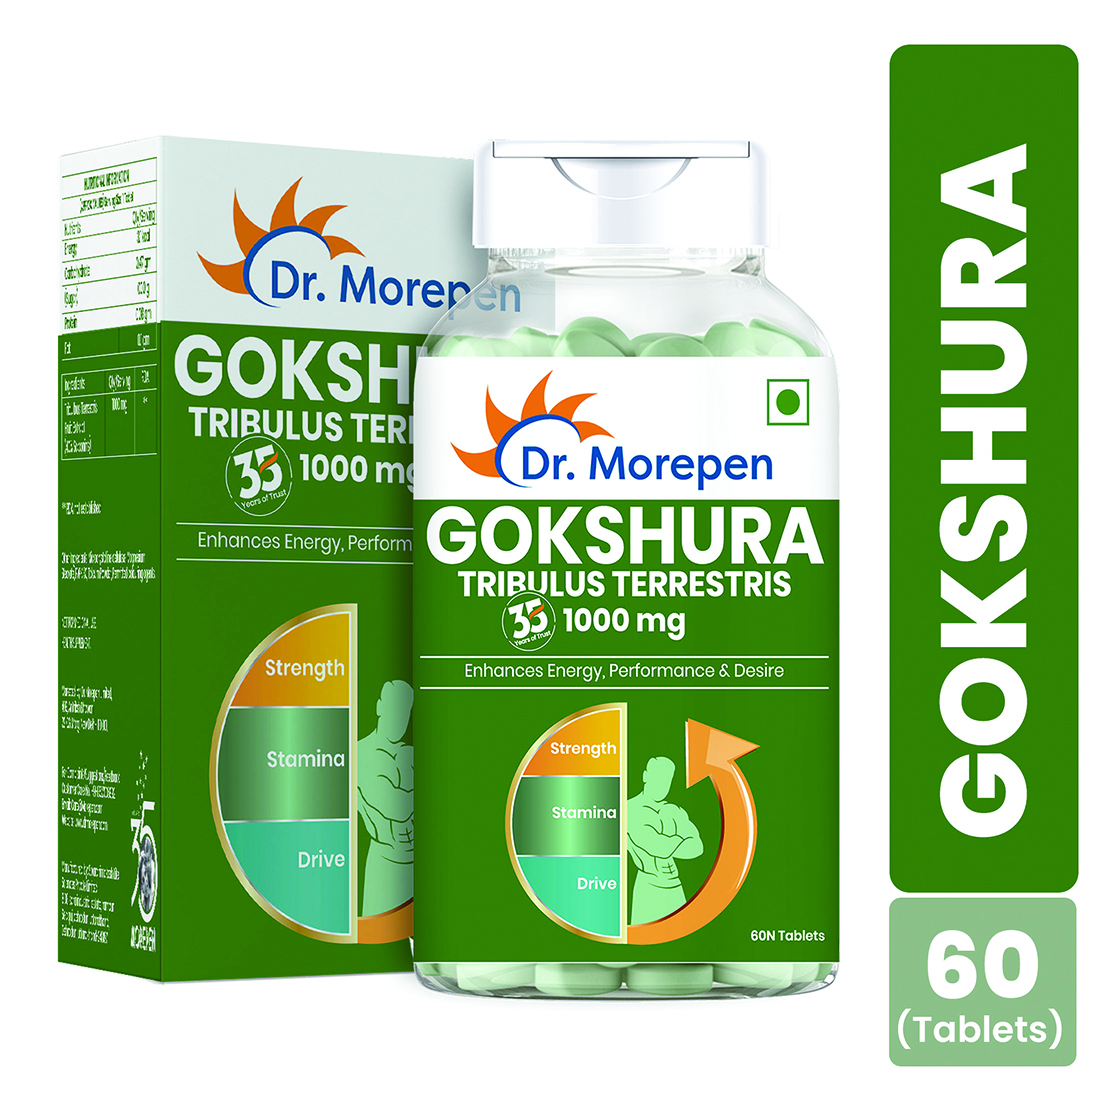 Dr. Morepen Gokshura 1000mg Tablet | For Energy, Performance, Strength & Stamina